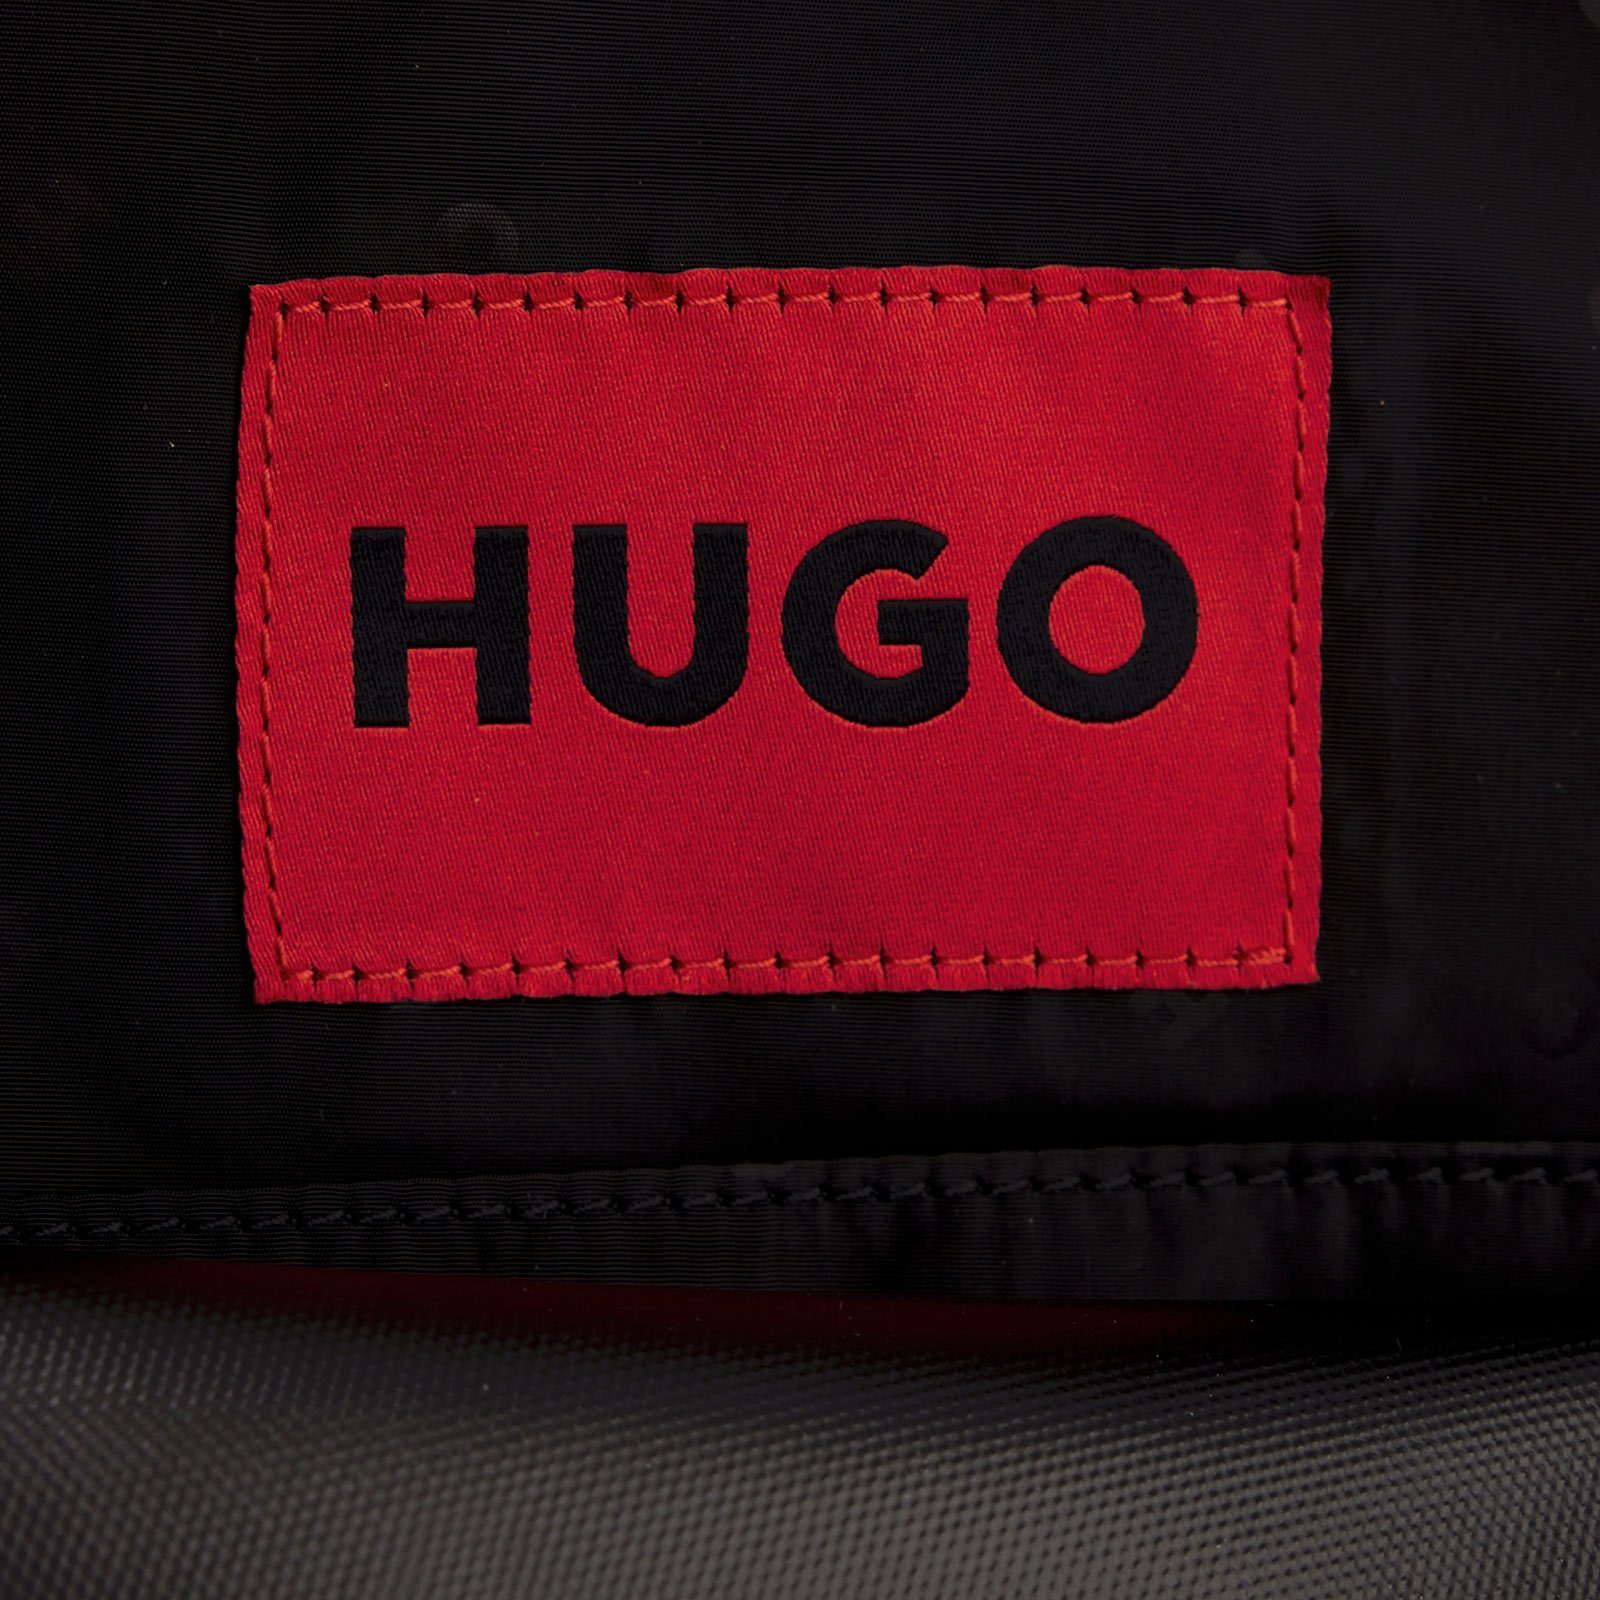 Rucksack mit Logo HUGO Ethon Blau charakteristischem BL,